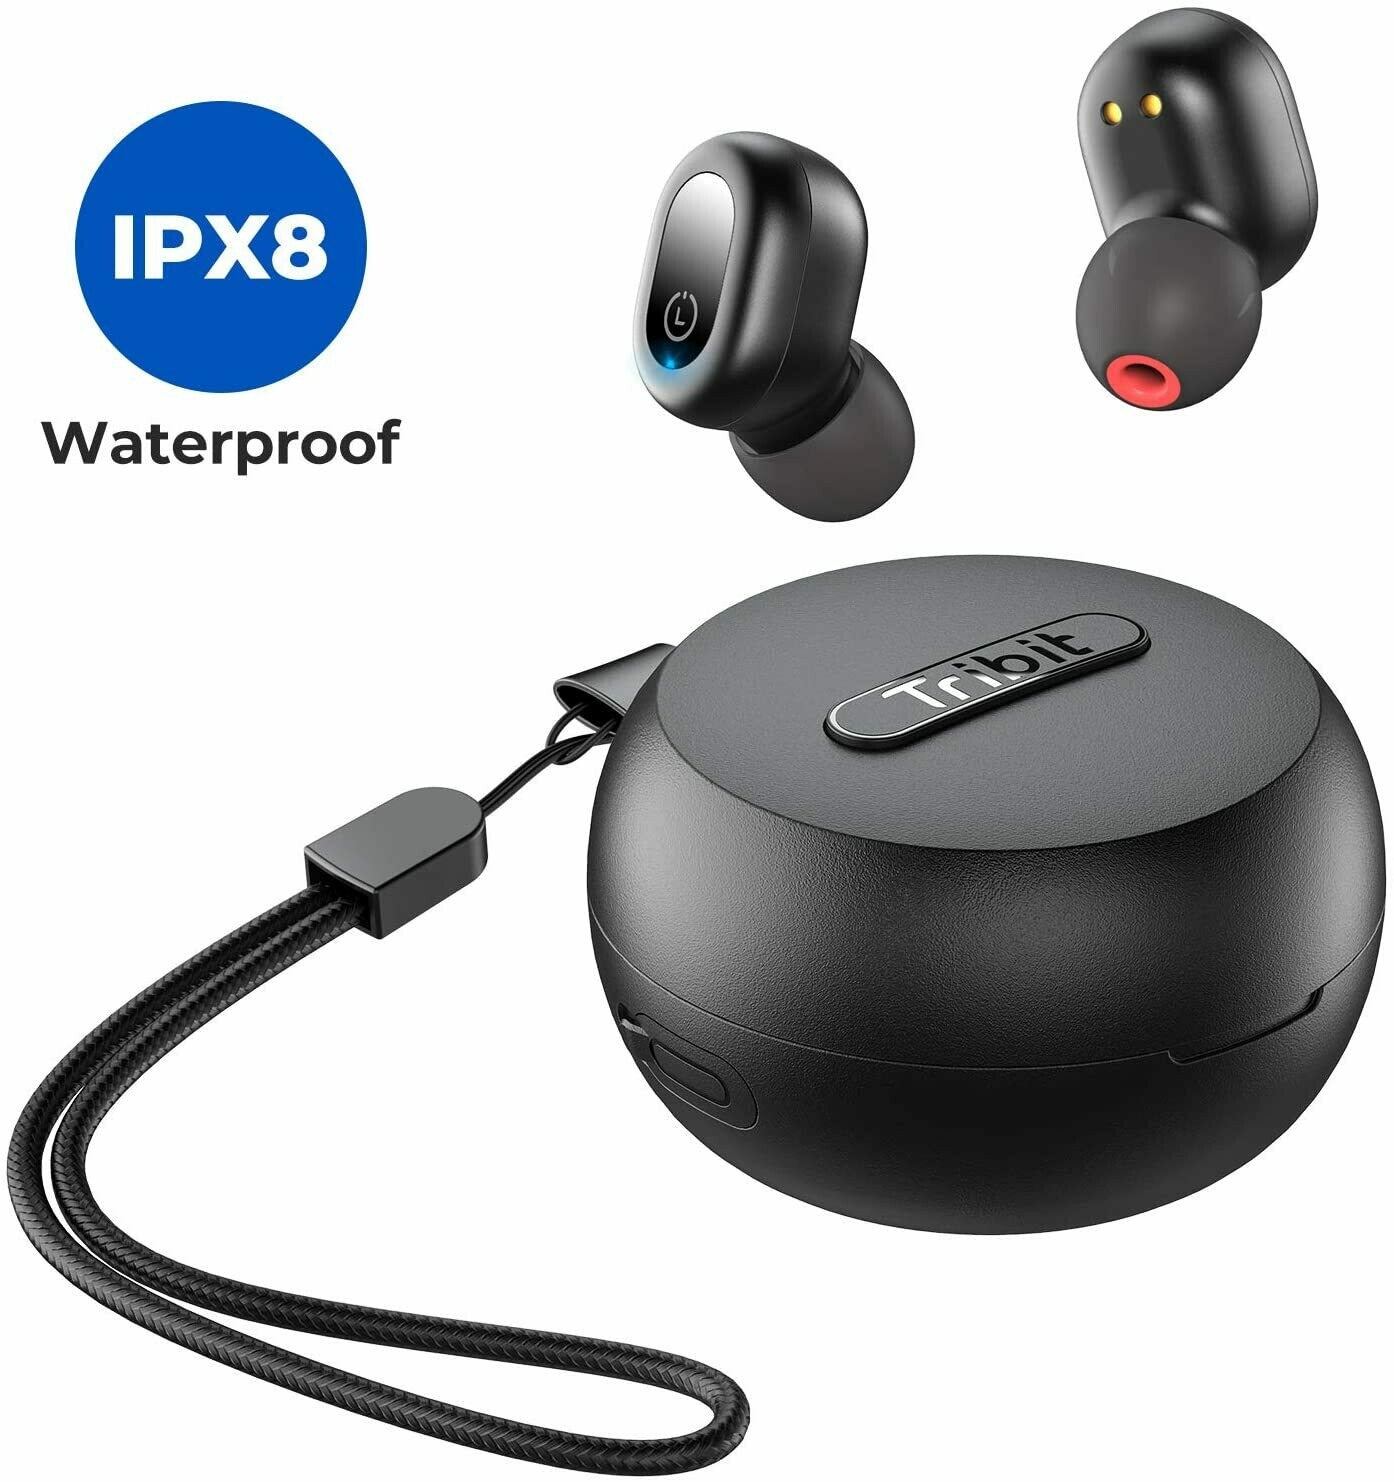 Tribit Flybuds 1 IPX8 waterproof earphone sports bluetooth earphone with wireless charging case